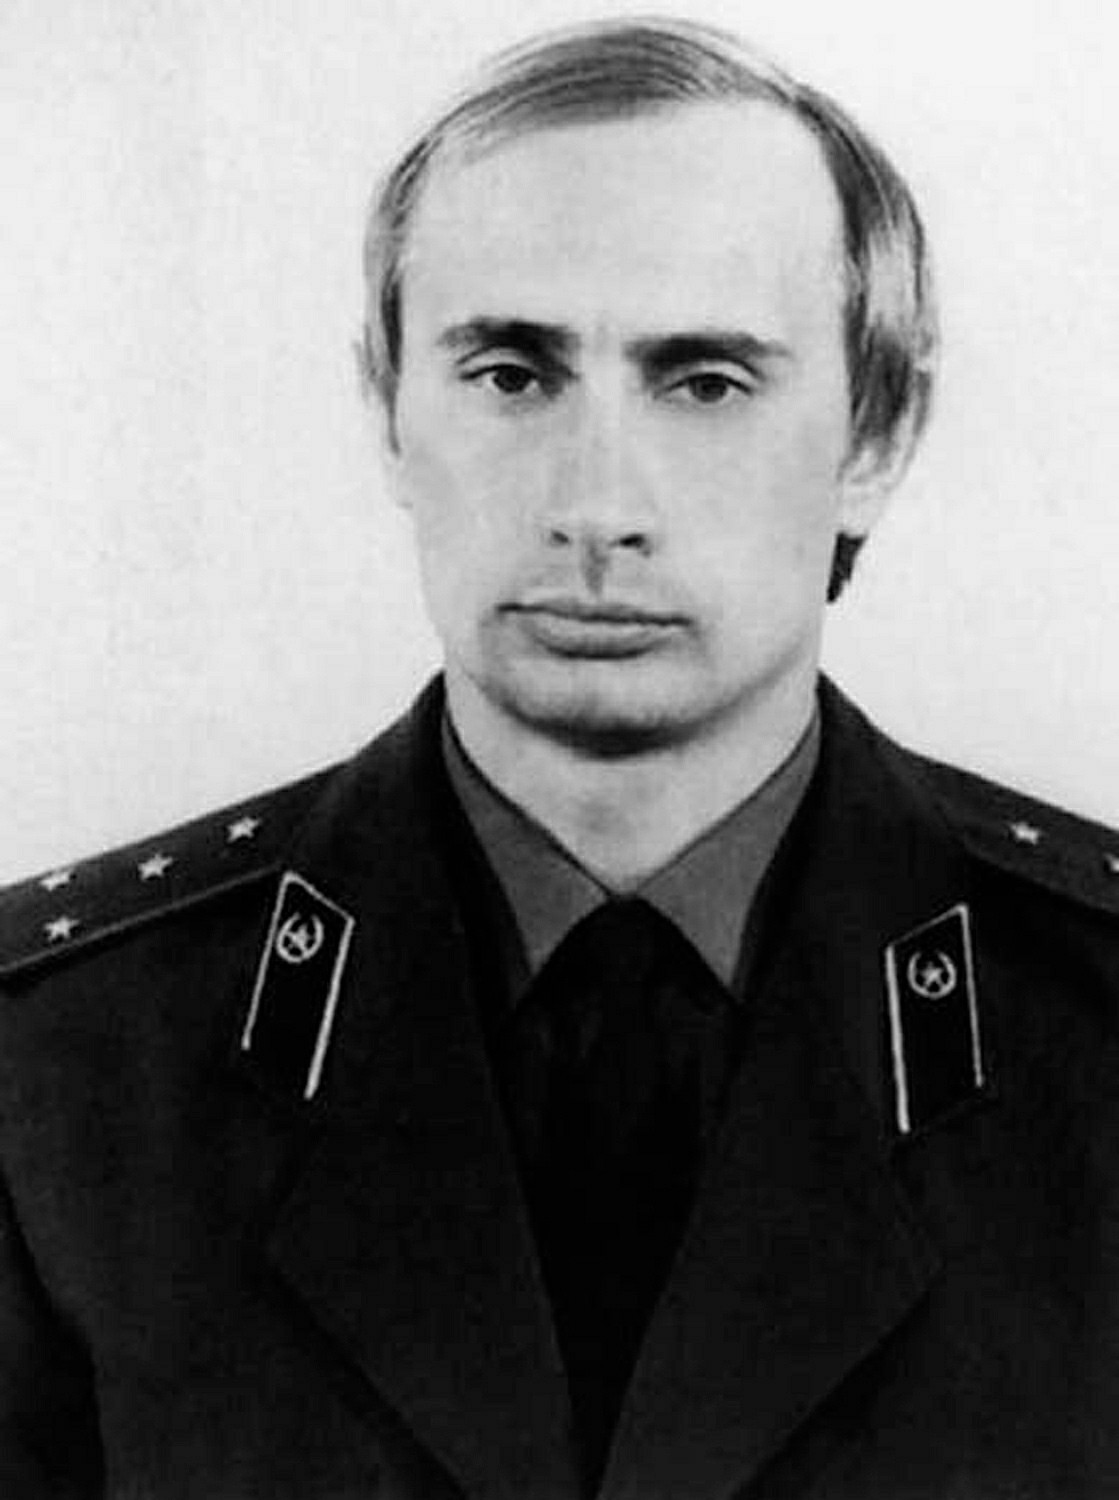 Око 1980. годинe, Русија, Млади Владимир Путин у униформи КГБ-а.